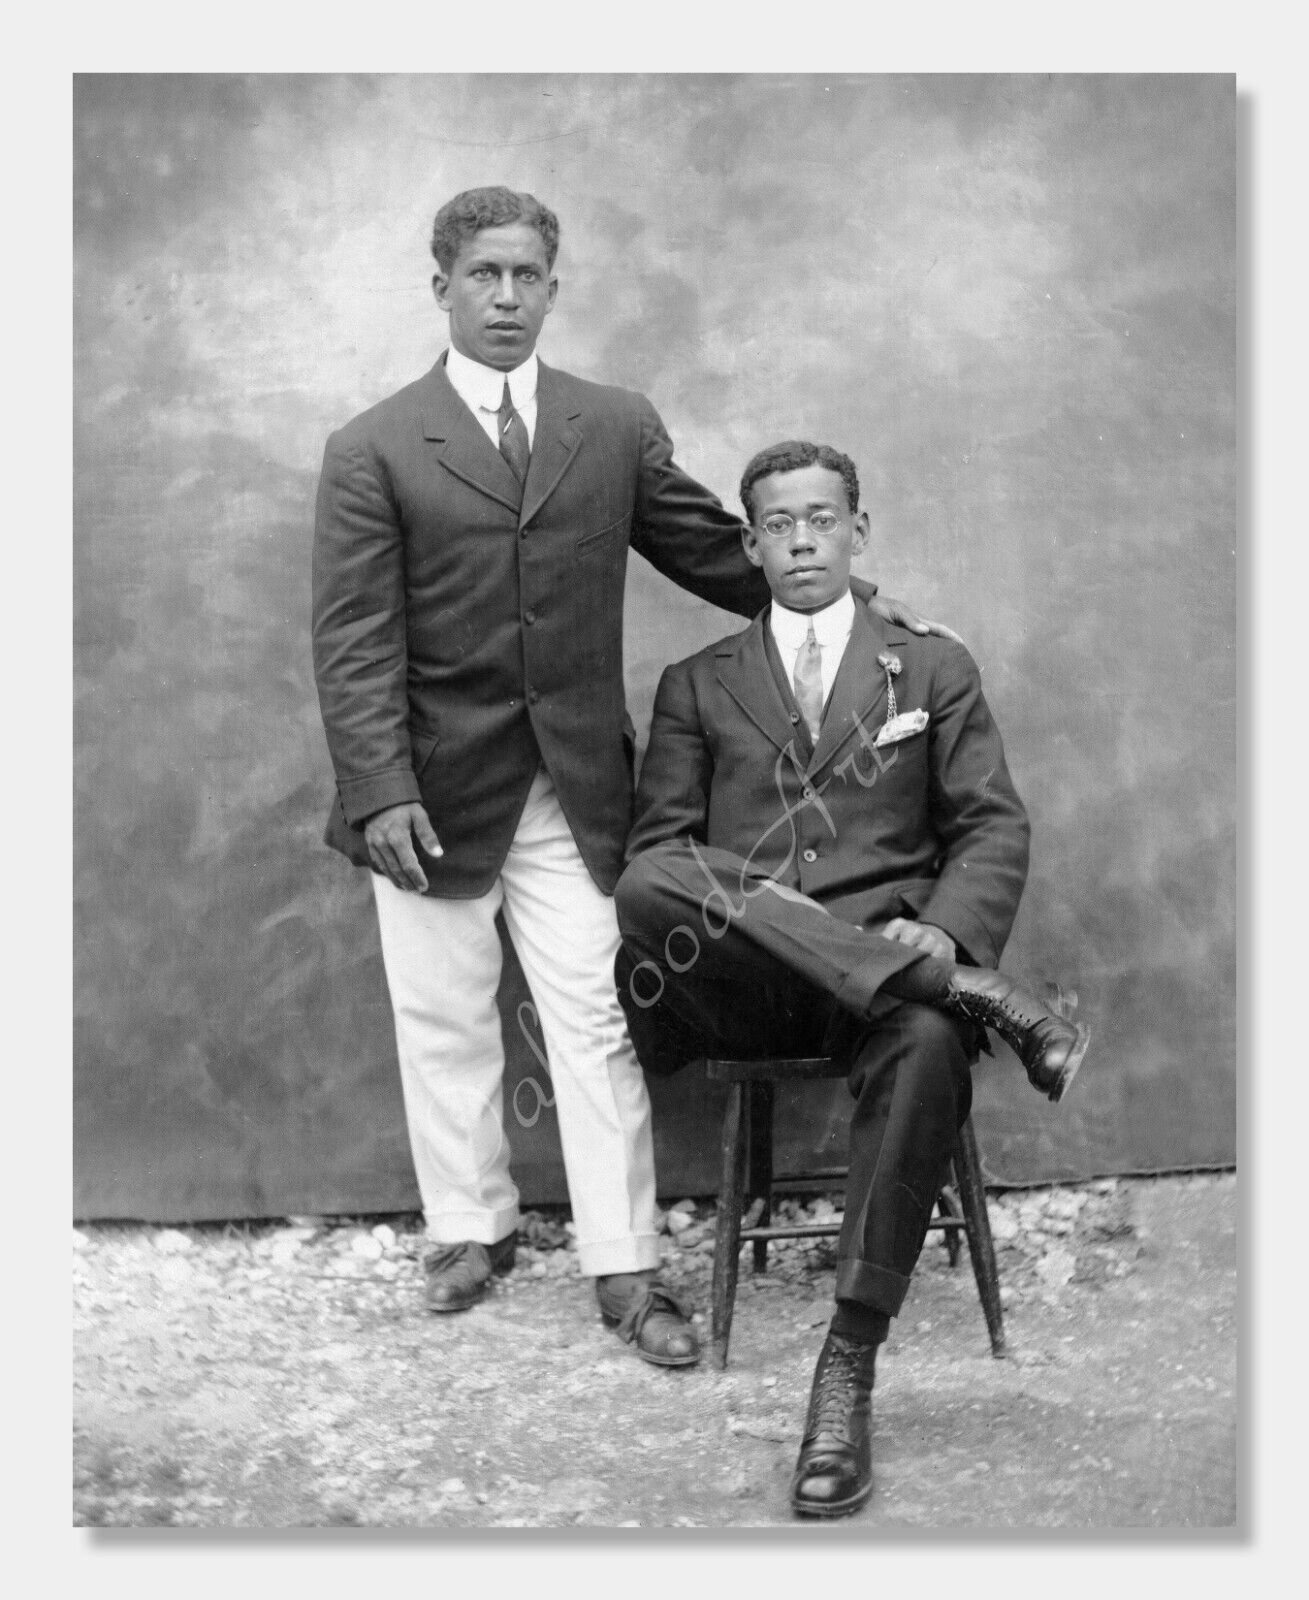 Portrait of Two Young Handsome Black Men c1910s, Vintage Photo Reprint